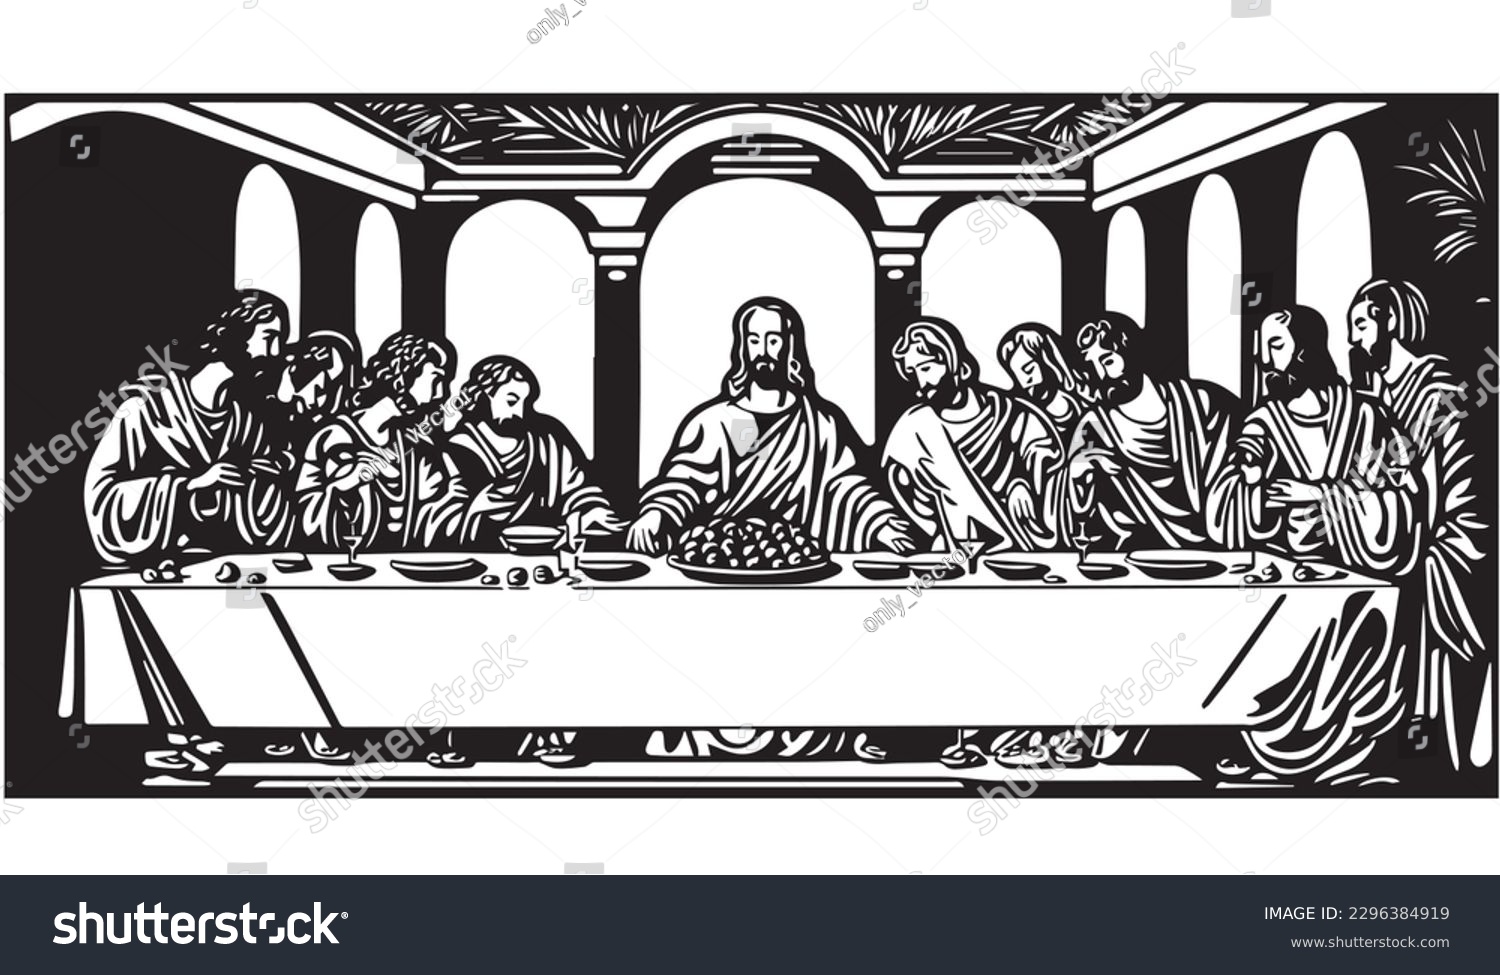 SVG of Jesus Christ The Last Supper. Vector illustration. svg